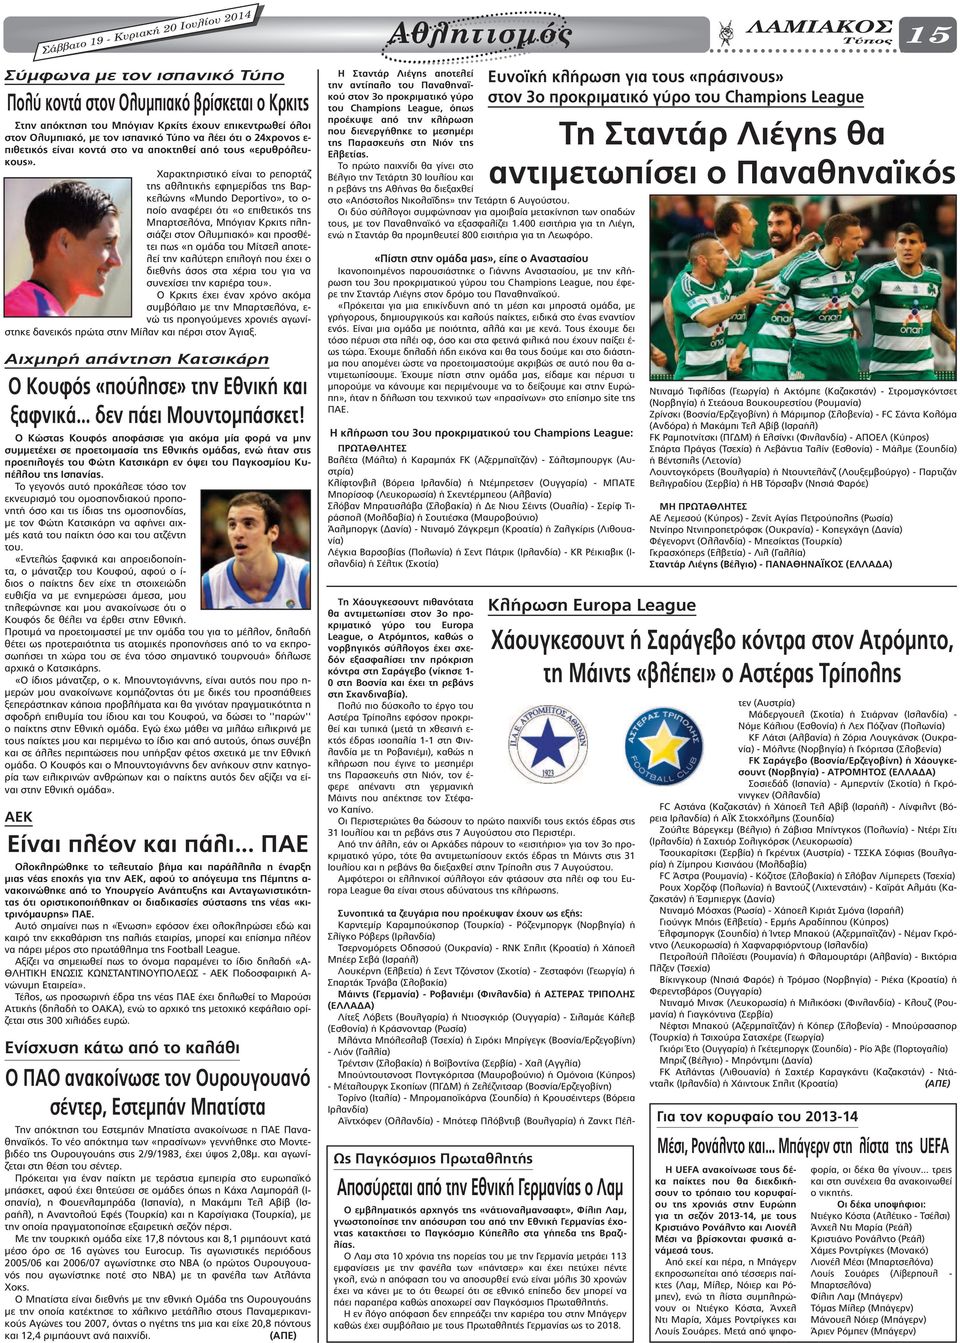 Χαρακτηριστικό είναι το ρεπορτάζ της αθλητικής εφηµερίδας της Βαρκελώνης «Mundo Deportivo», το ο- ποίο αναφέρει ότι «ο επιθετικός της Μπαρτσελόνα, Μπόγιαν Κρκιτς πλησιάζει στον Ολυµπιακό» και